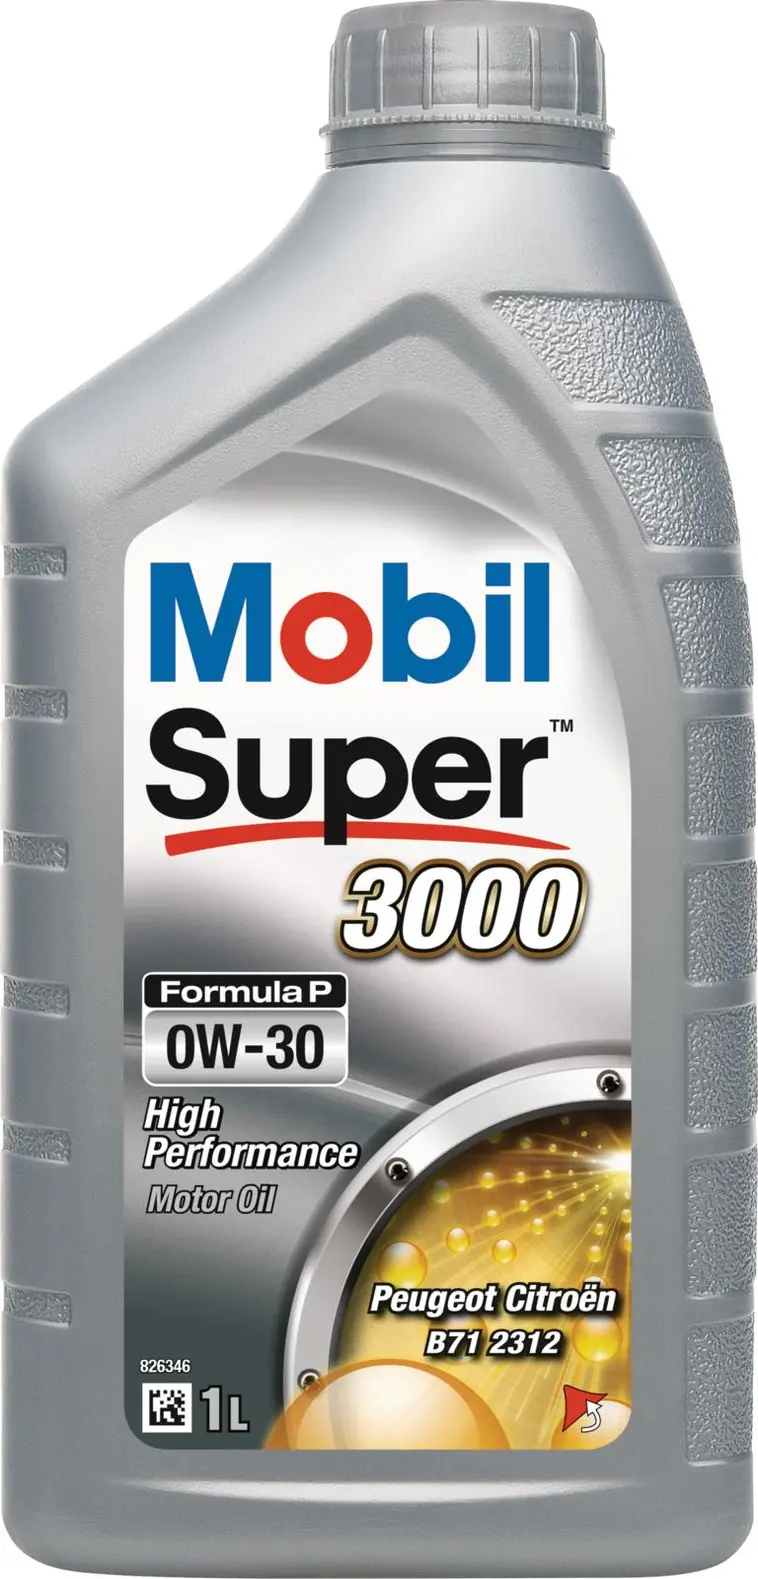 Mobil Super 3000 1l moottoriöljy Formula P 0W-30